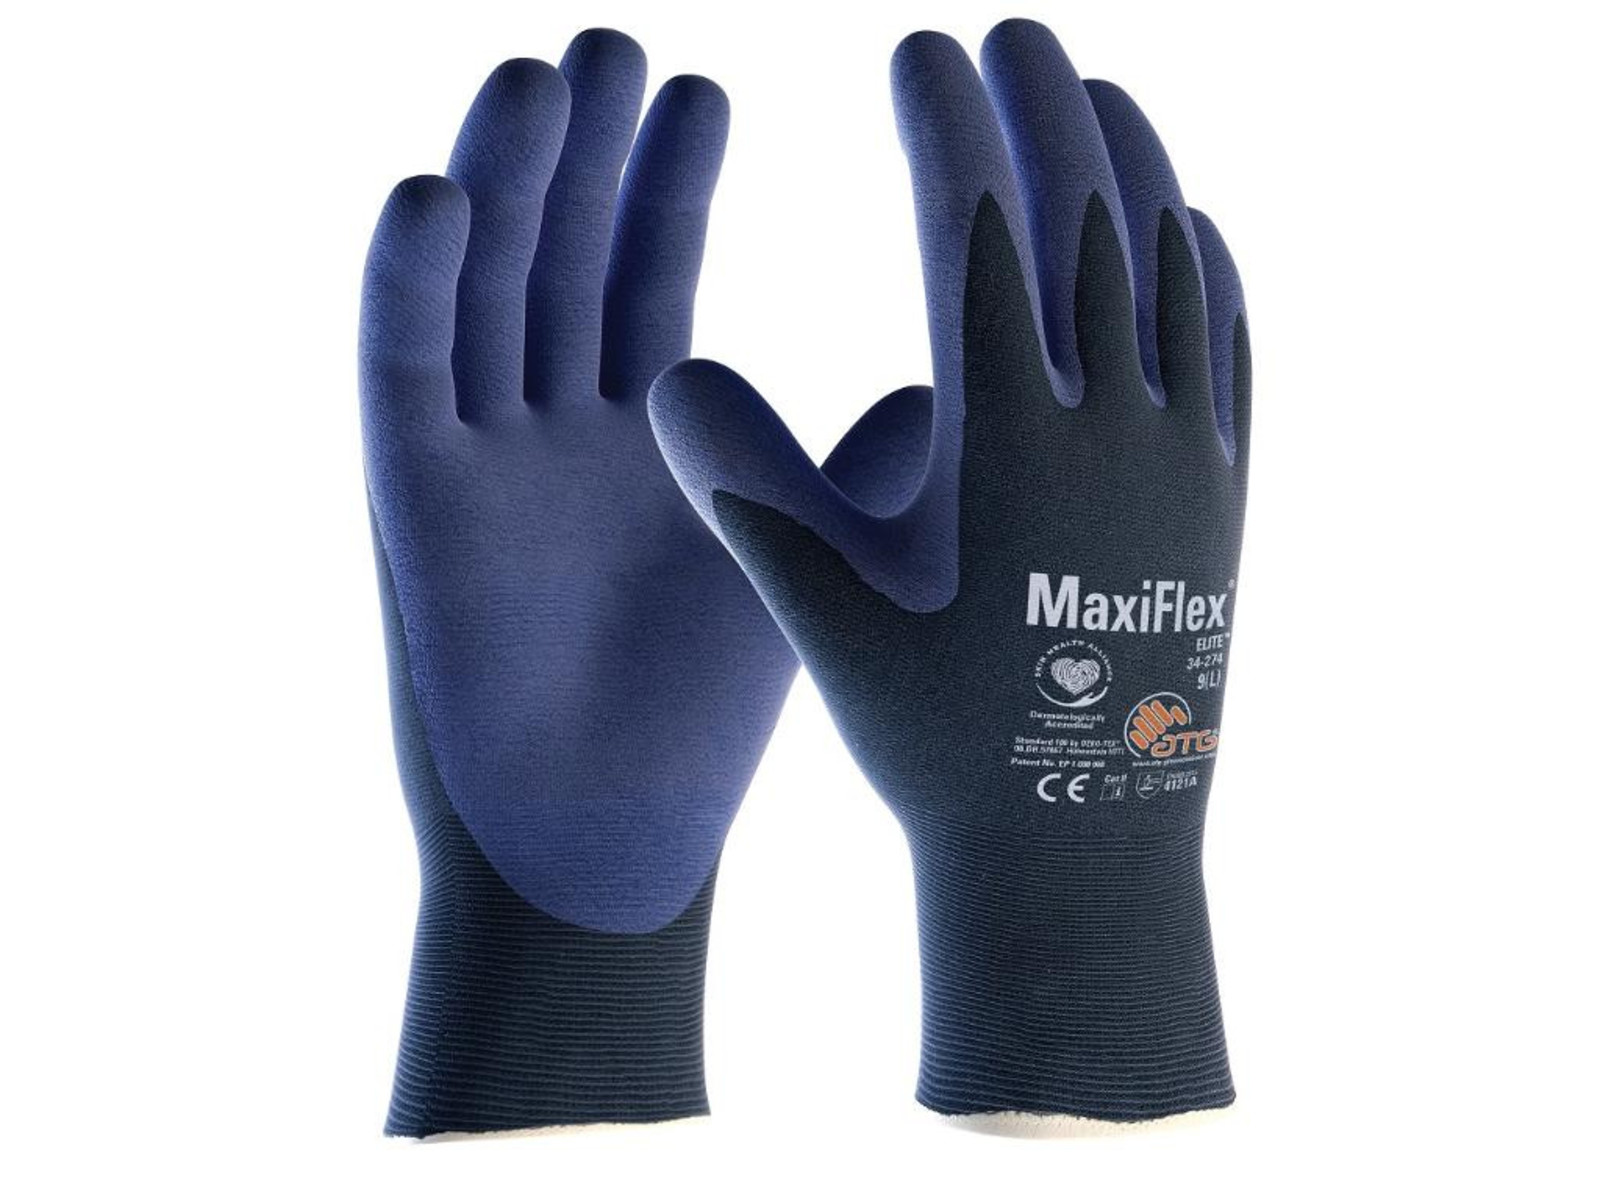 Pracovné rukavice ATG MaxiFlex Elite 34-274 - veľkosť: 7/S, farba: navy